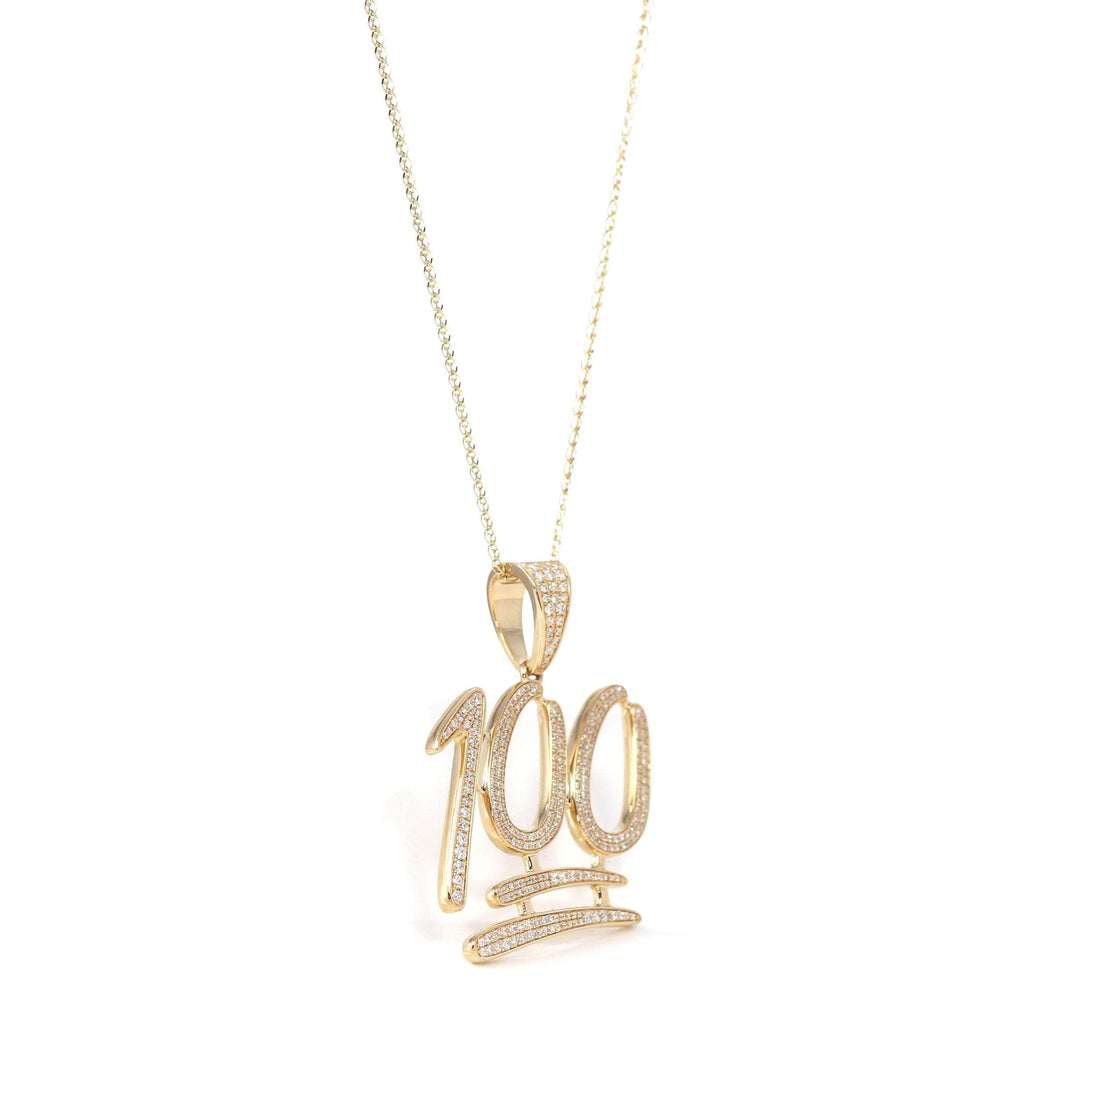 Baikalla Jewelry 14K Pure Yellow Gold Pendant Pendant Only 14K Yellow Gold "100" Pendant Necklace With VS1 Diamonds